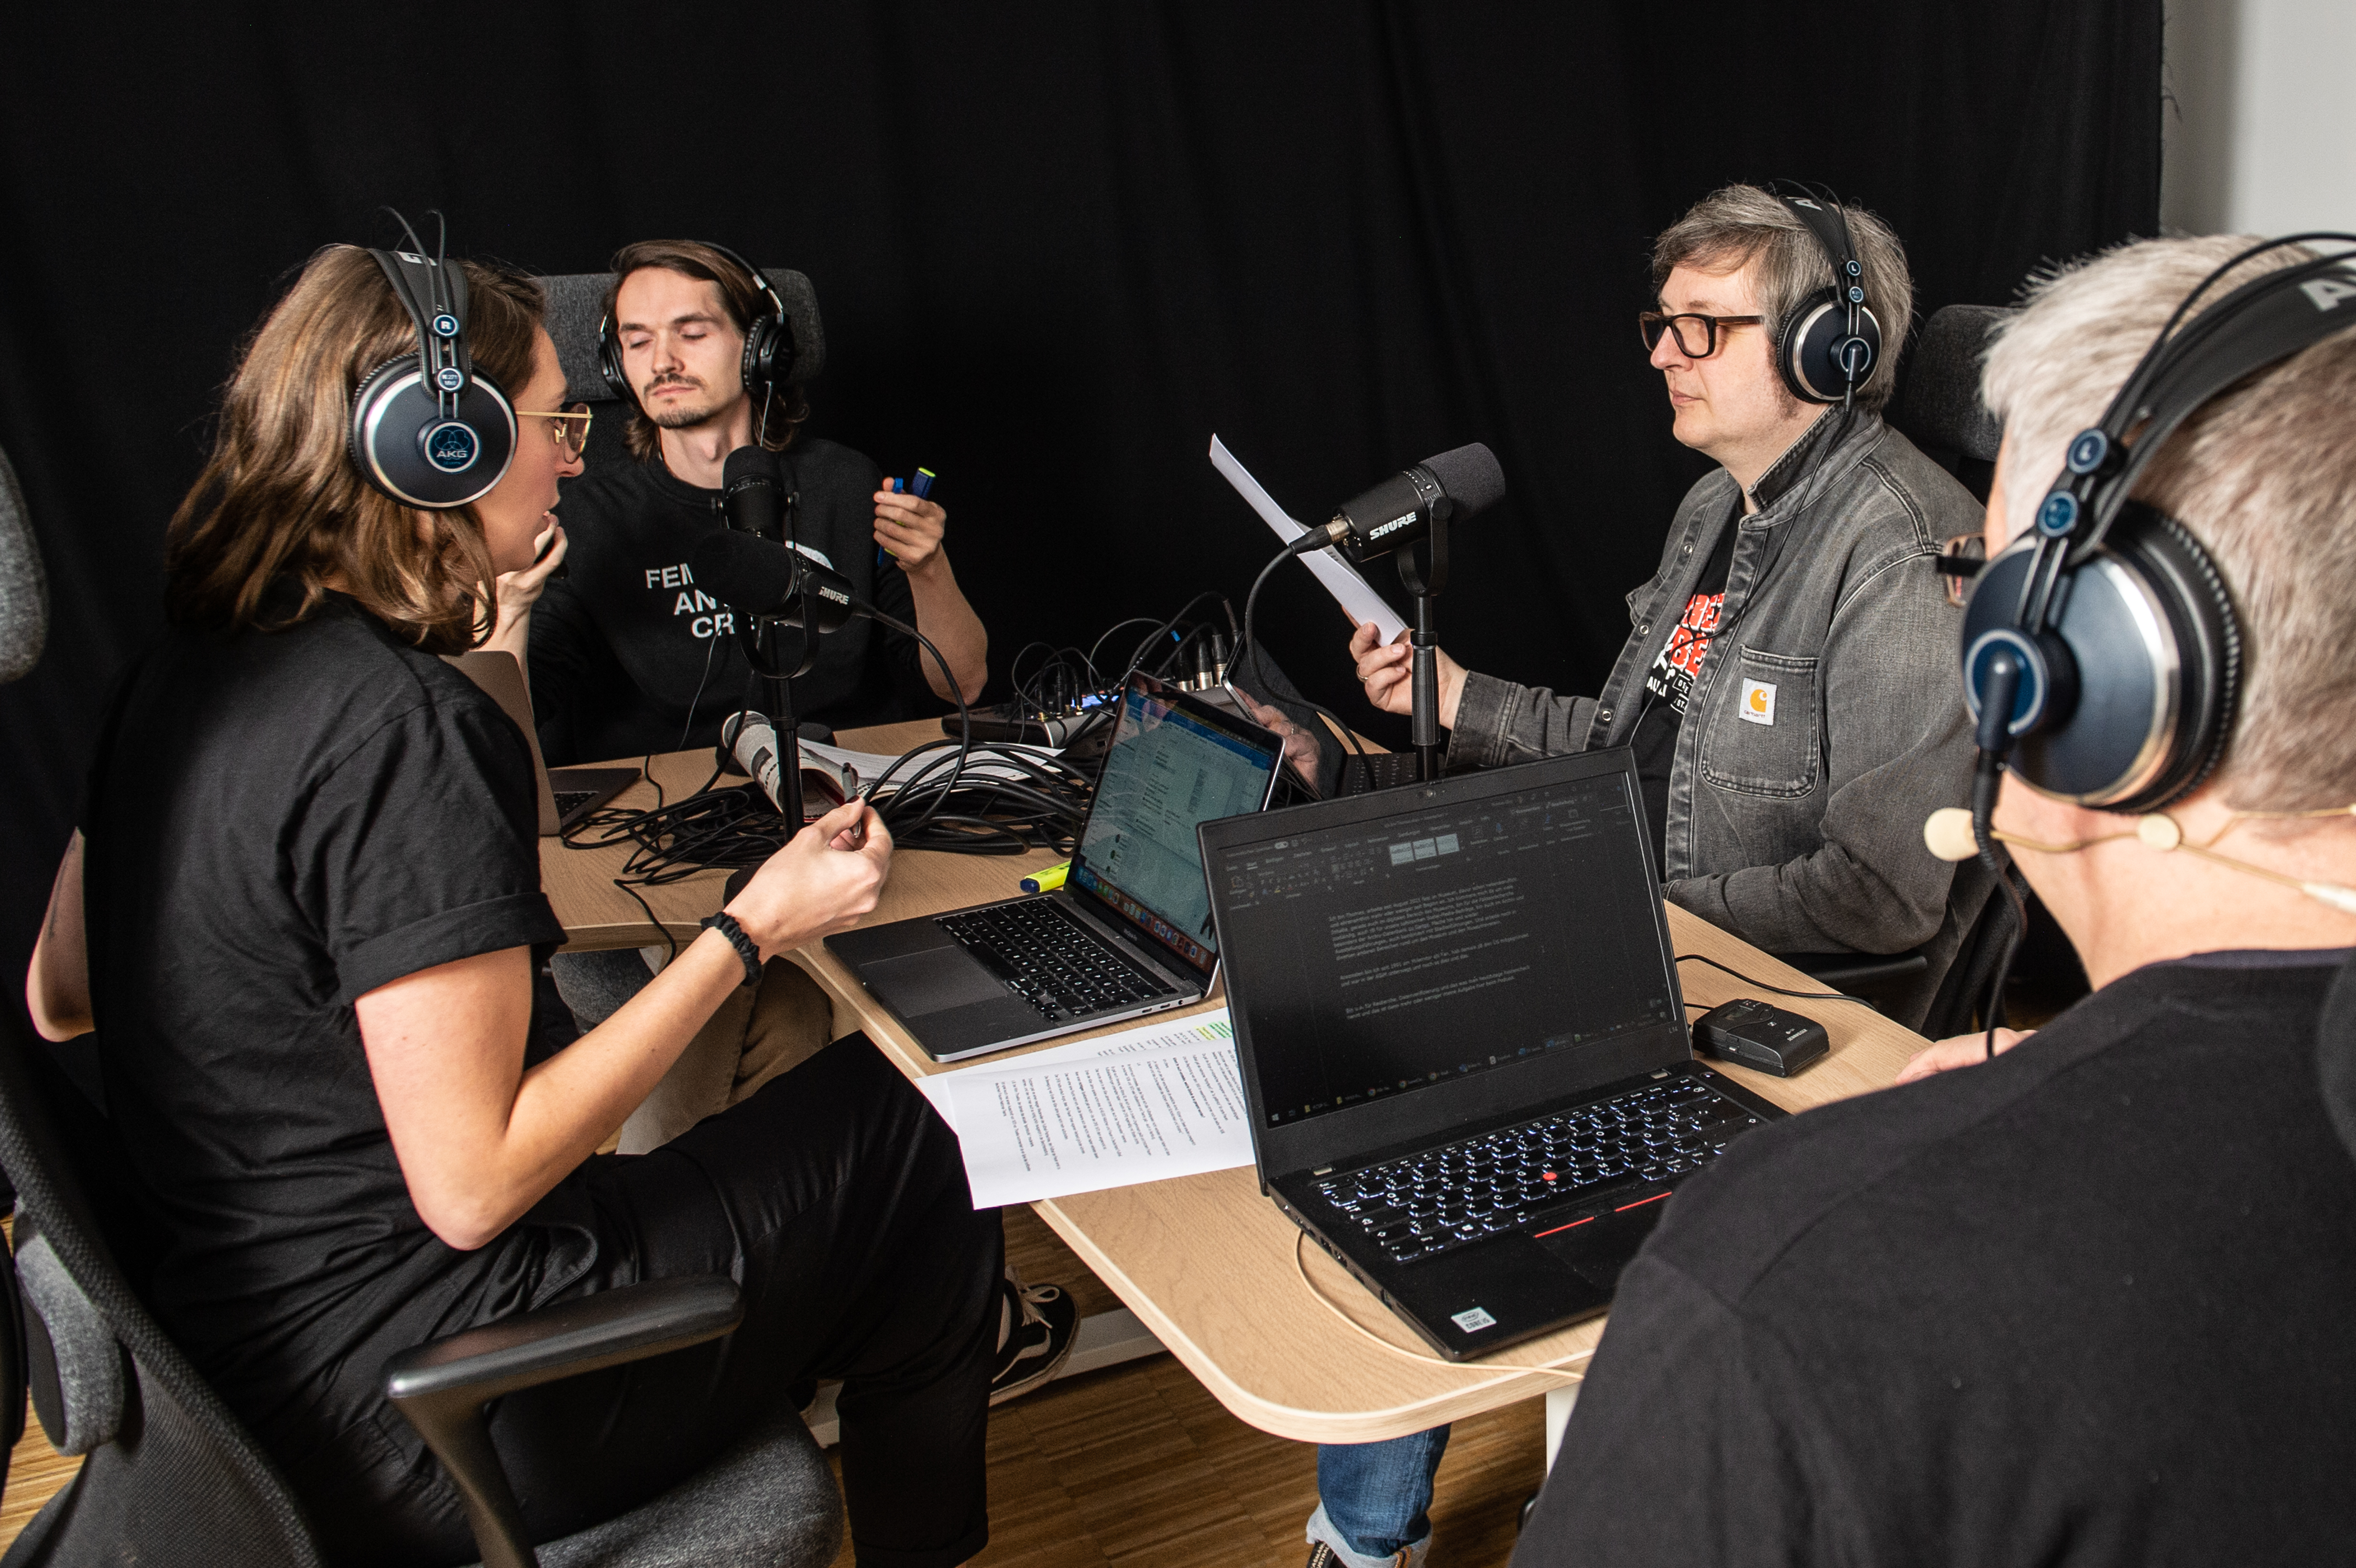 Das Podcast-Team des Museums bei der Aufzeichnung der neuen Folge. Vier Personen sitzen sich an einem Tisch gegenüber, alle haben Kopfhörer auf und einen Computer vor sich auf dem Tisch stehen.